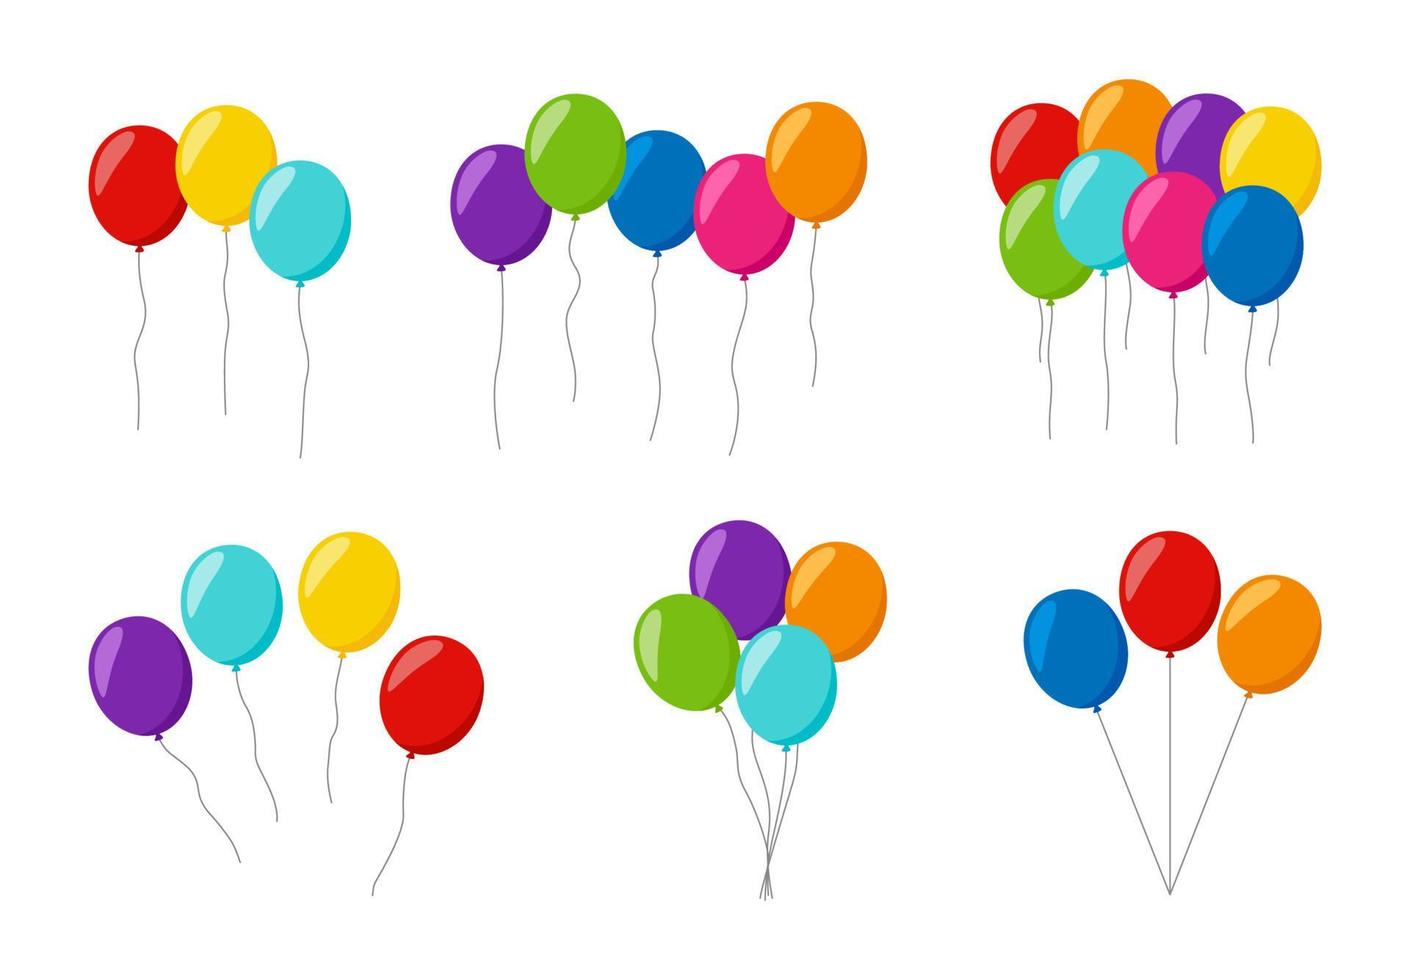 conjunto de balões coloridos de hélio vetor